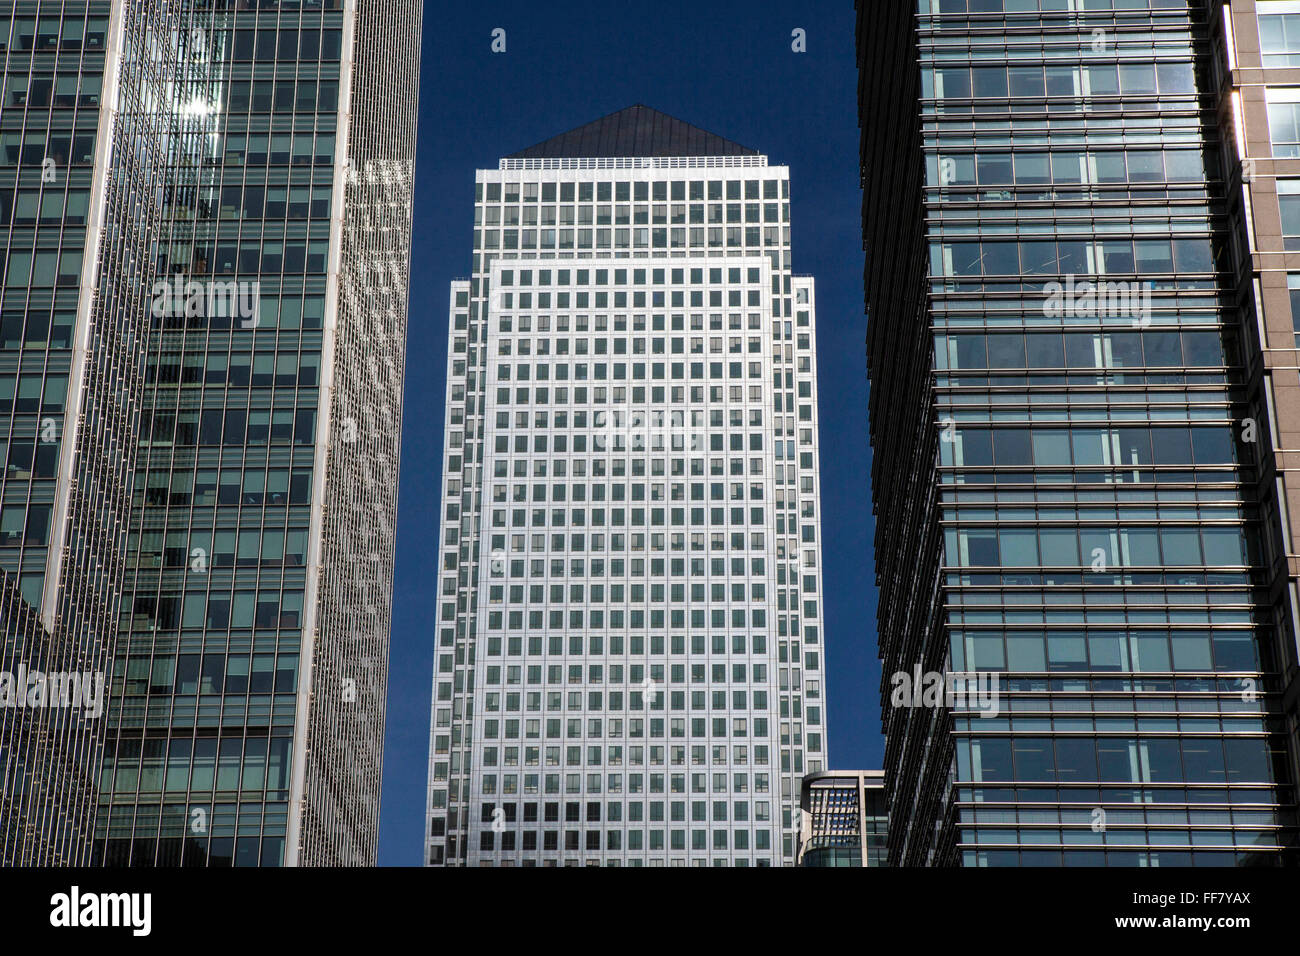 One Canada Square Wolkenkratzer Gebäude (häufig falsch genannt, Canary Wharf) in East London, England, Vereinigtes Königreich.  Es ist das zweite höchste Gebäude im Vereinigten Königreich. Eines der vorherrschenden Merkmale ist das Pyramidendach enthält ein blinkendes Licht. Das Gebäude wird hauptsächlich für Büros genutzt und ist ein Symbol des Finanzsektors Londons und ist mit anderen Business-Türmen umgeben. Stockfoto